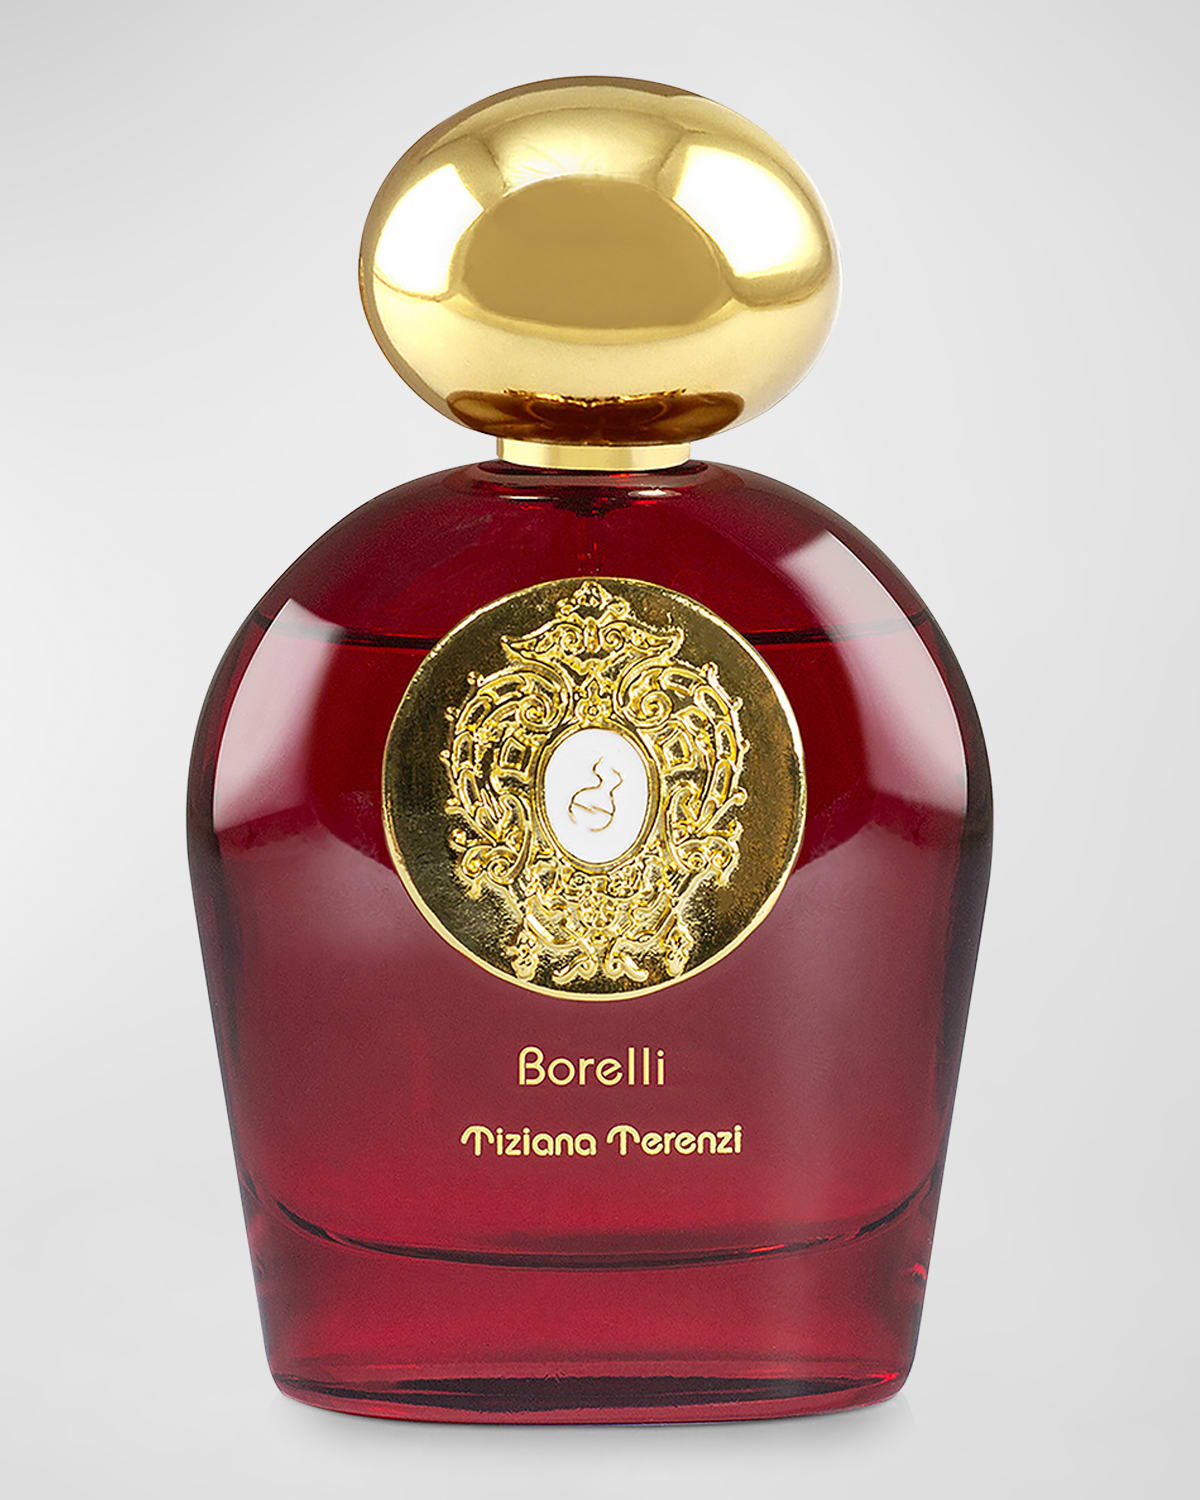 Borelli Extrait de Parfum, 3.4 oz.